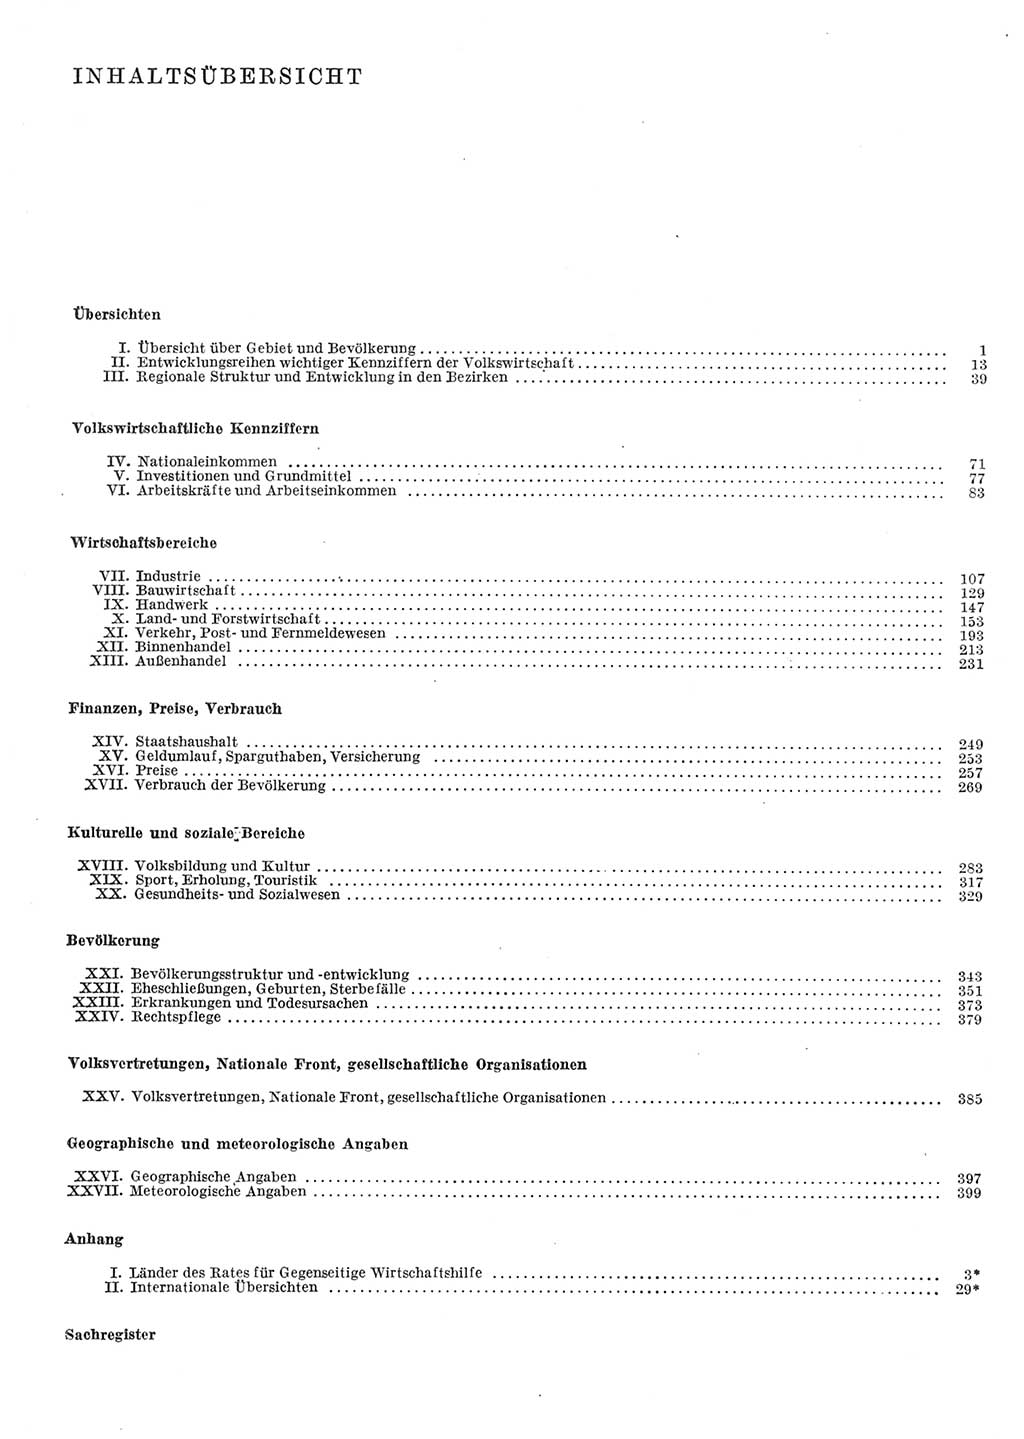 Statistisches Jahrbuch der Deutschen Demokratischen Republik (DDR) 1979, Seite 6 (Stat. Jb. DDR 1979, S. 6)